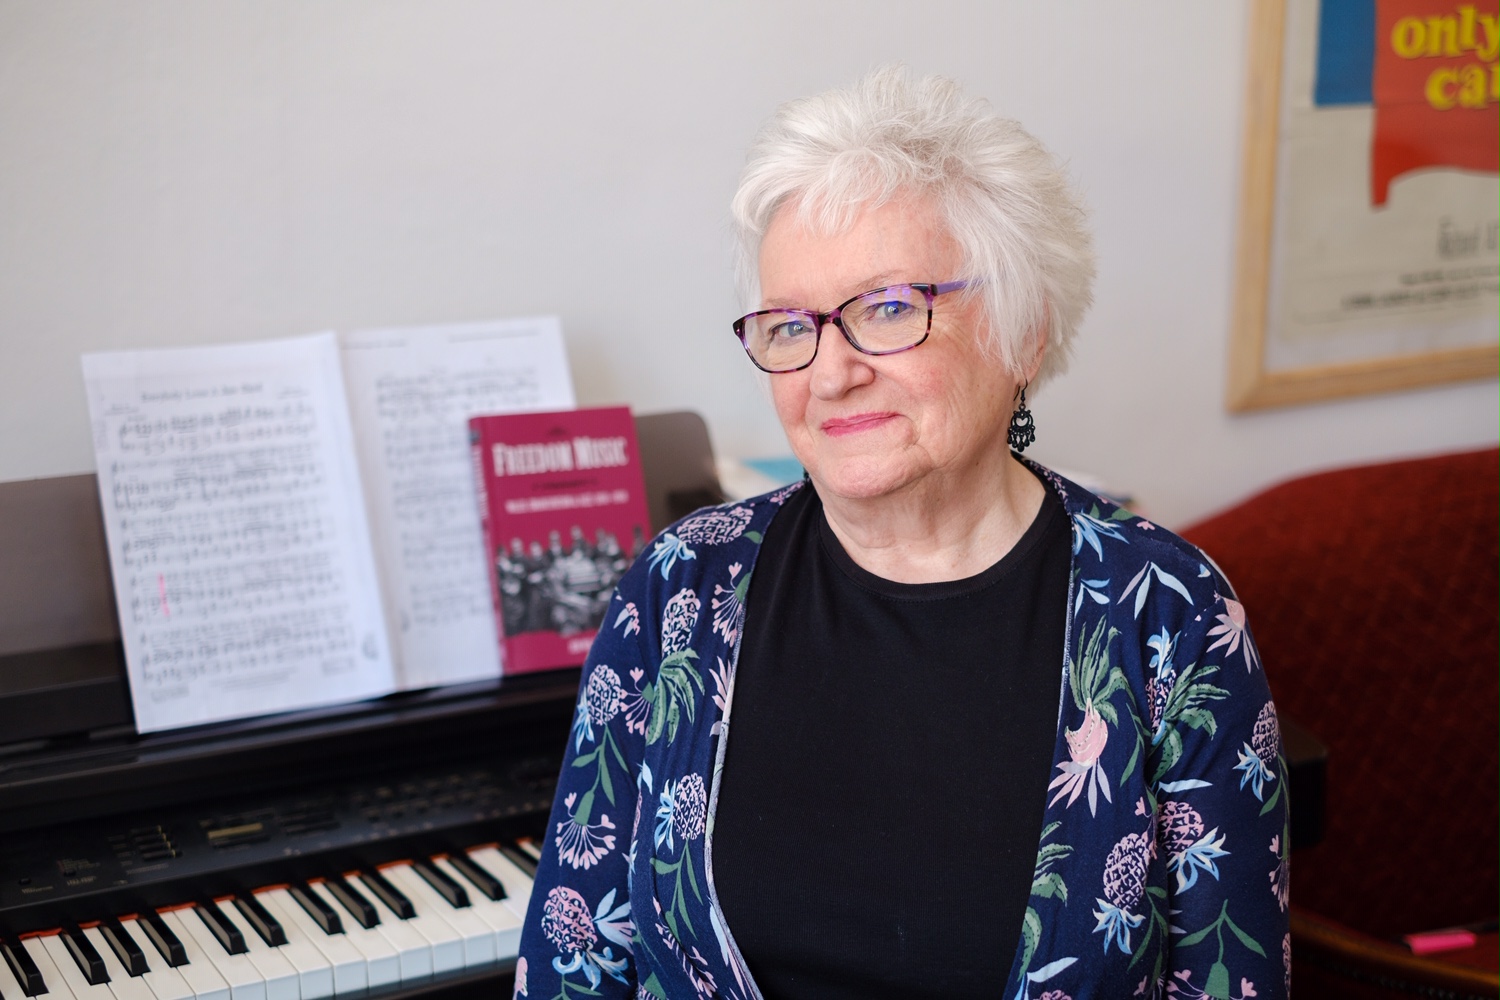 爵士历史学家珍·威尔逊教授坐在一架电子钢琴前。